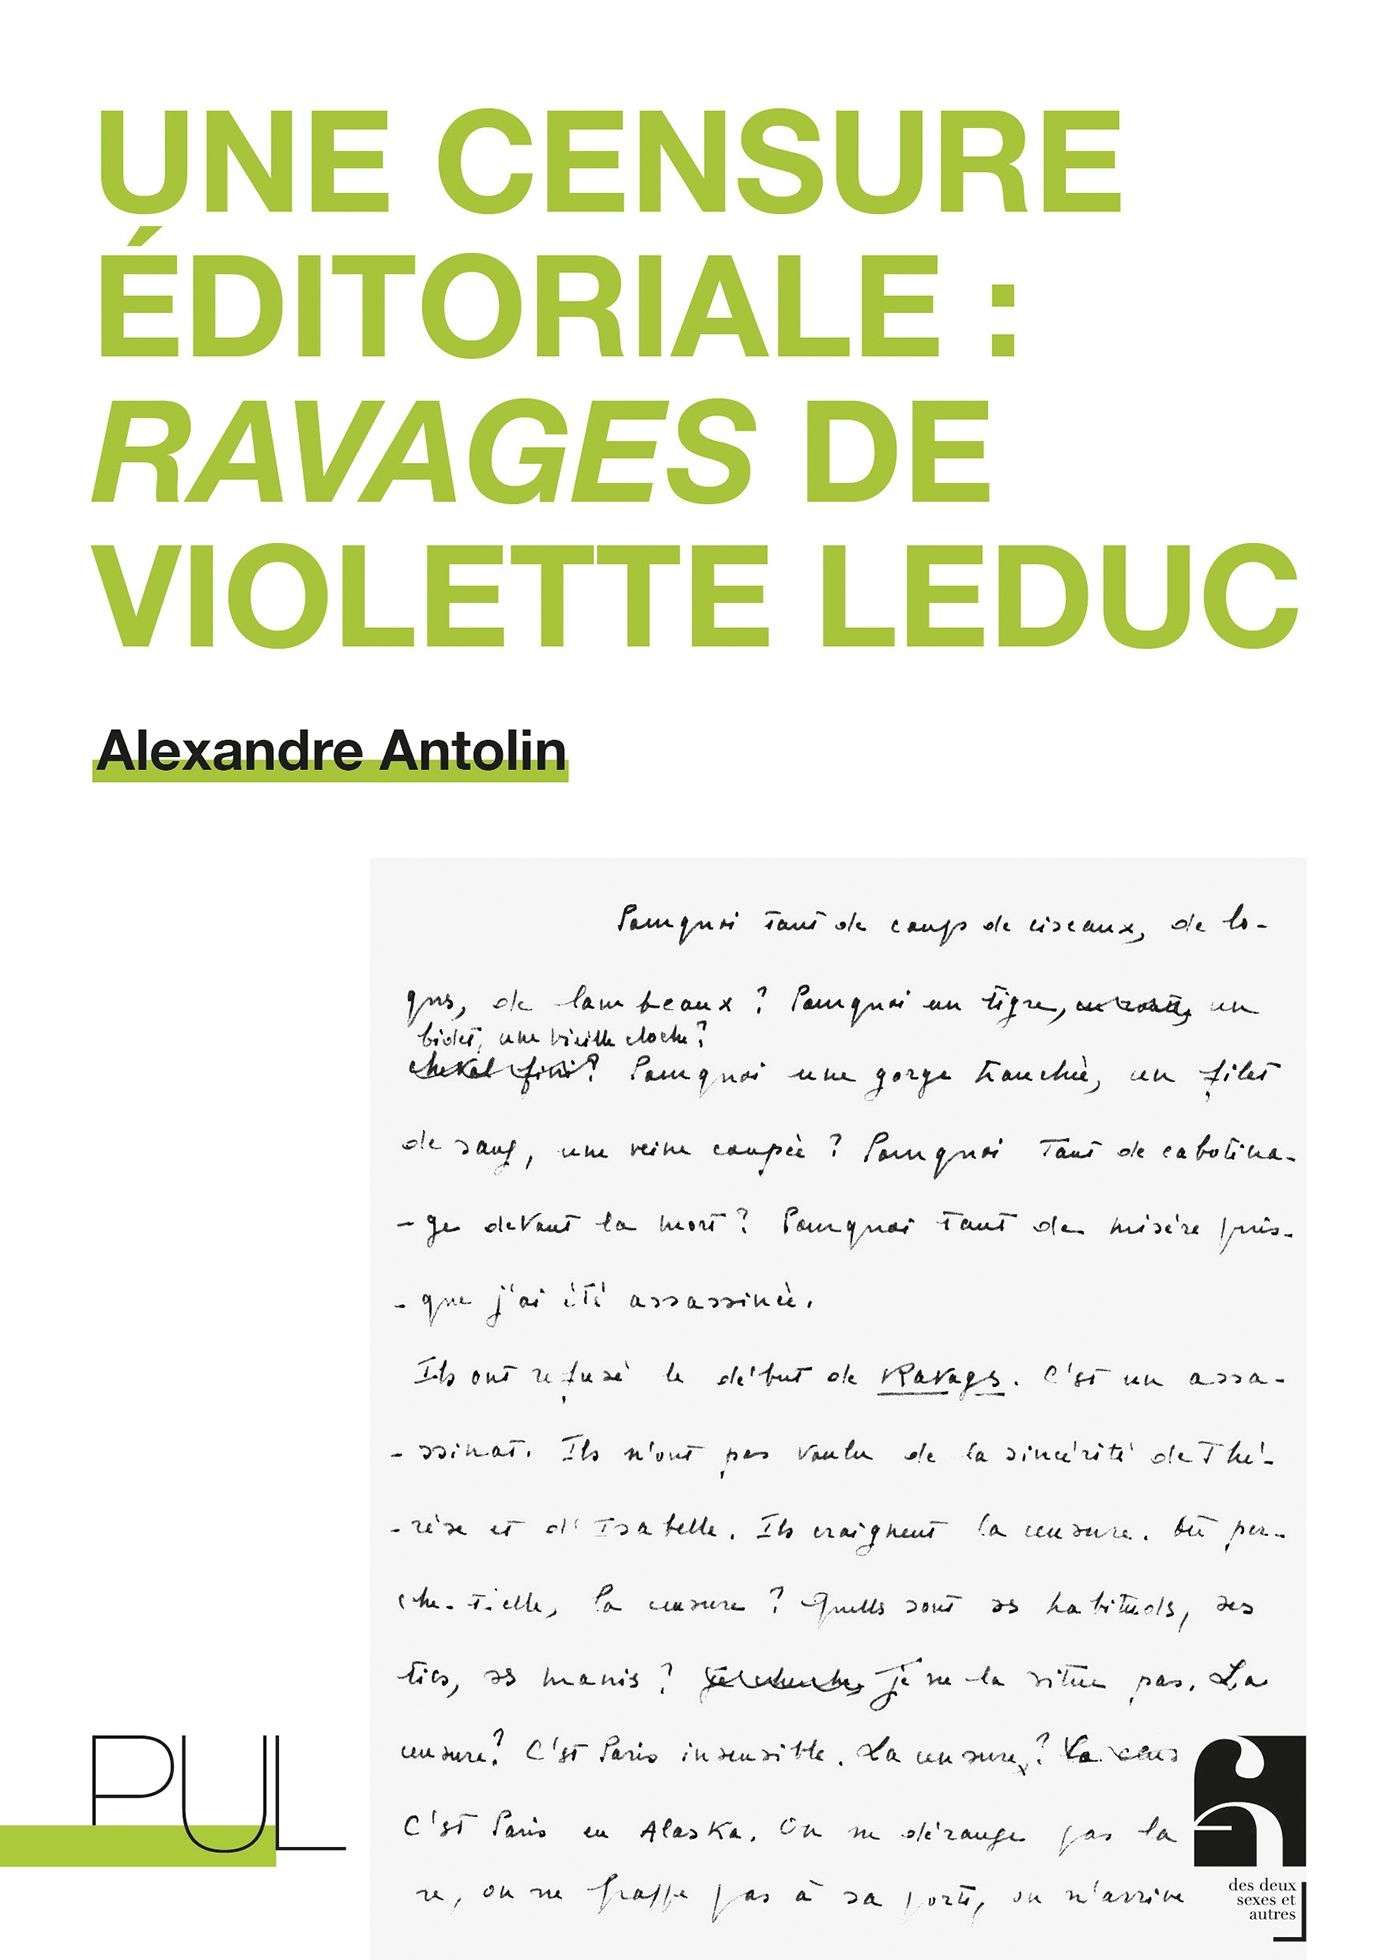 Couverture de l'ouvrage "Une Censure éditoriale : Ravages de Violette Leduc" d'Alexandre Antolin, Presses universitaires de Lyon, 2023